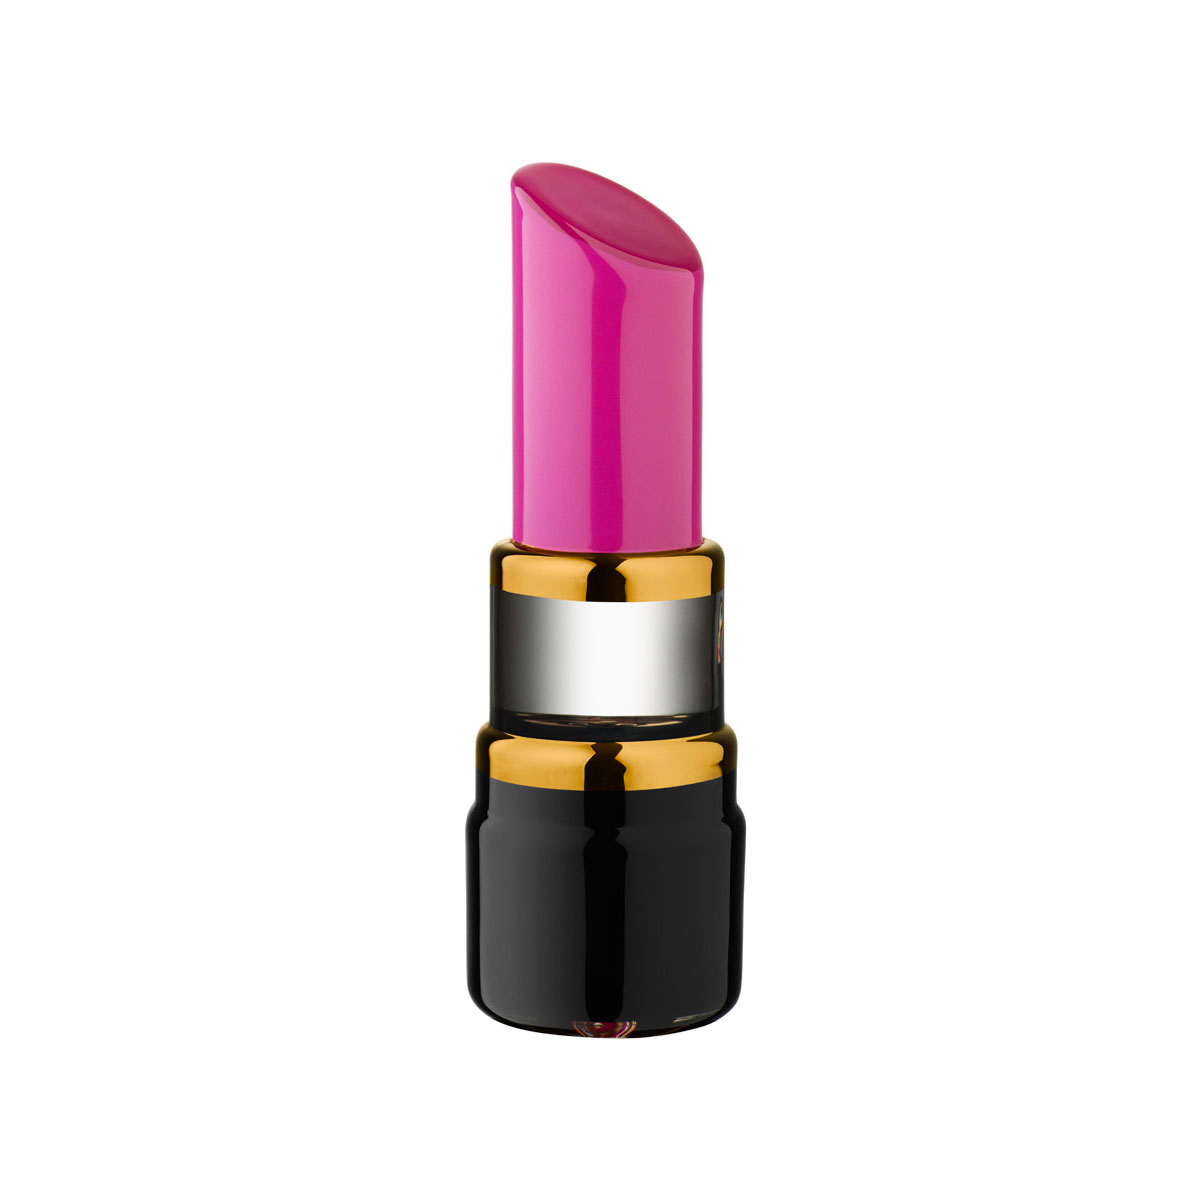 Kosta Boda Make Up Mini Lipstick, Cerise